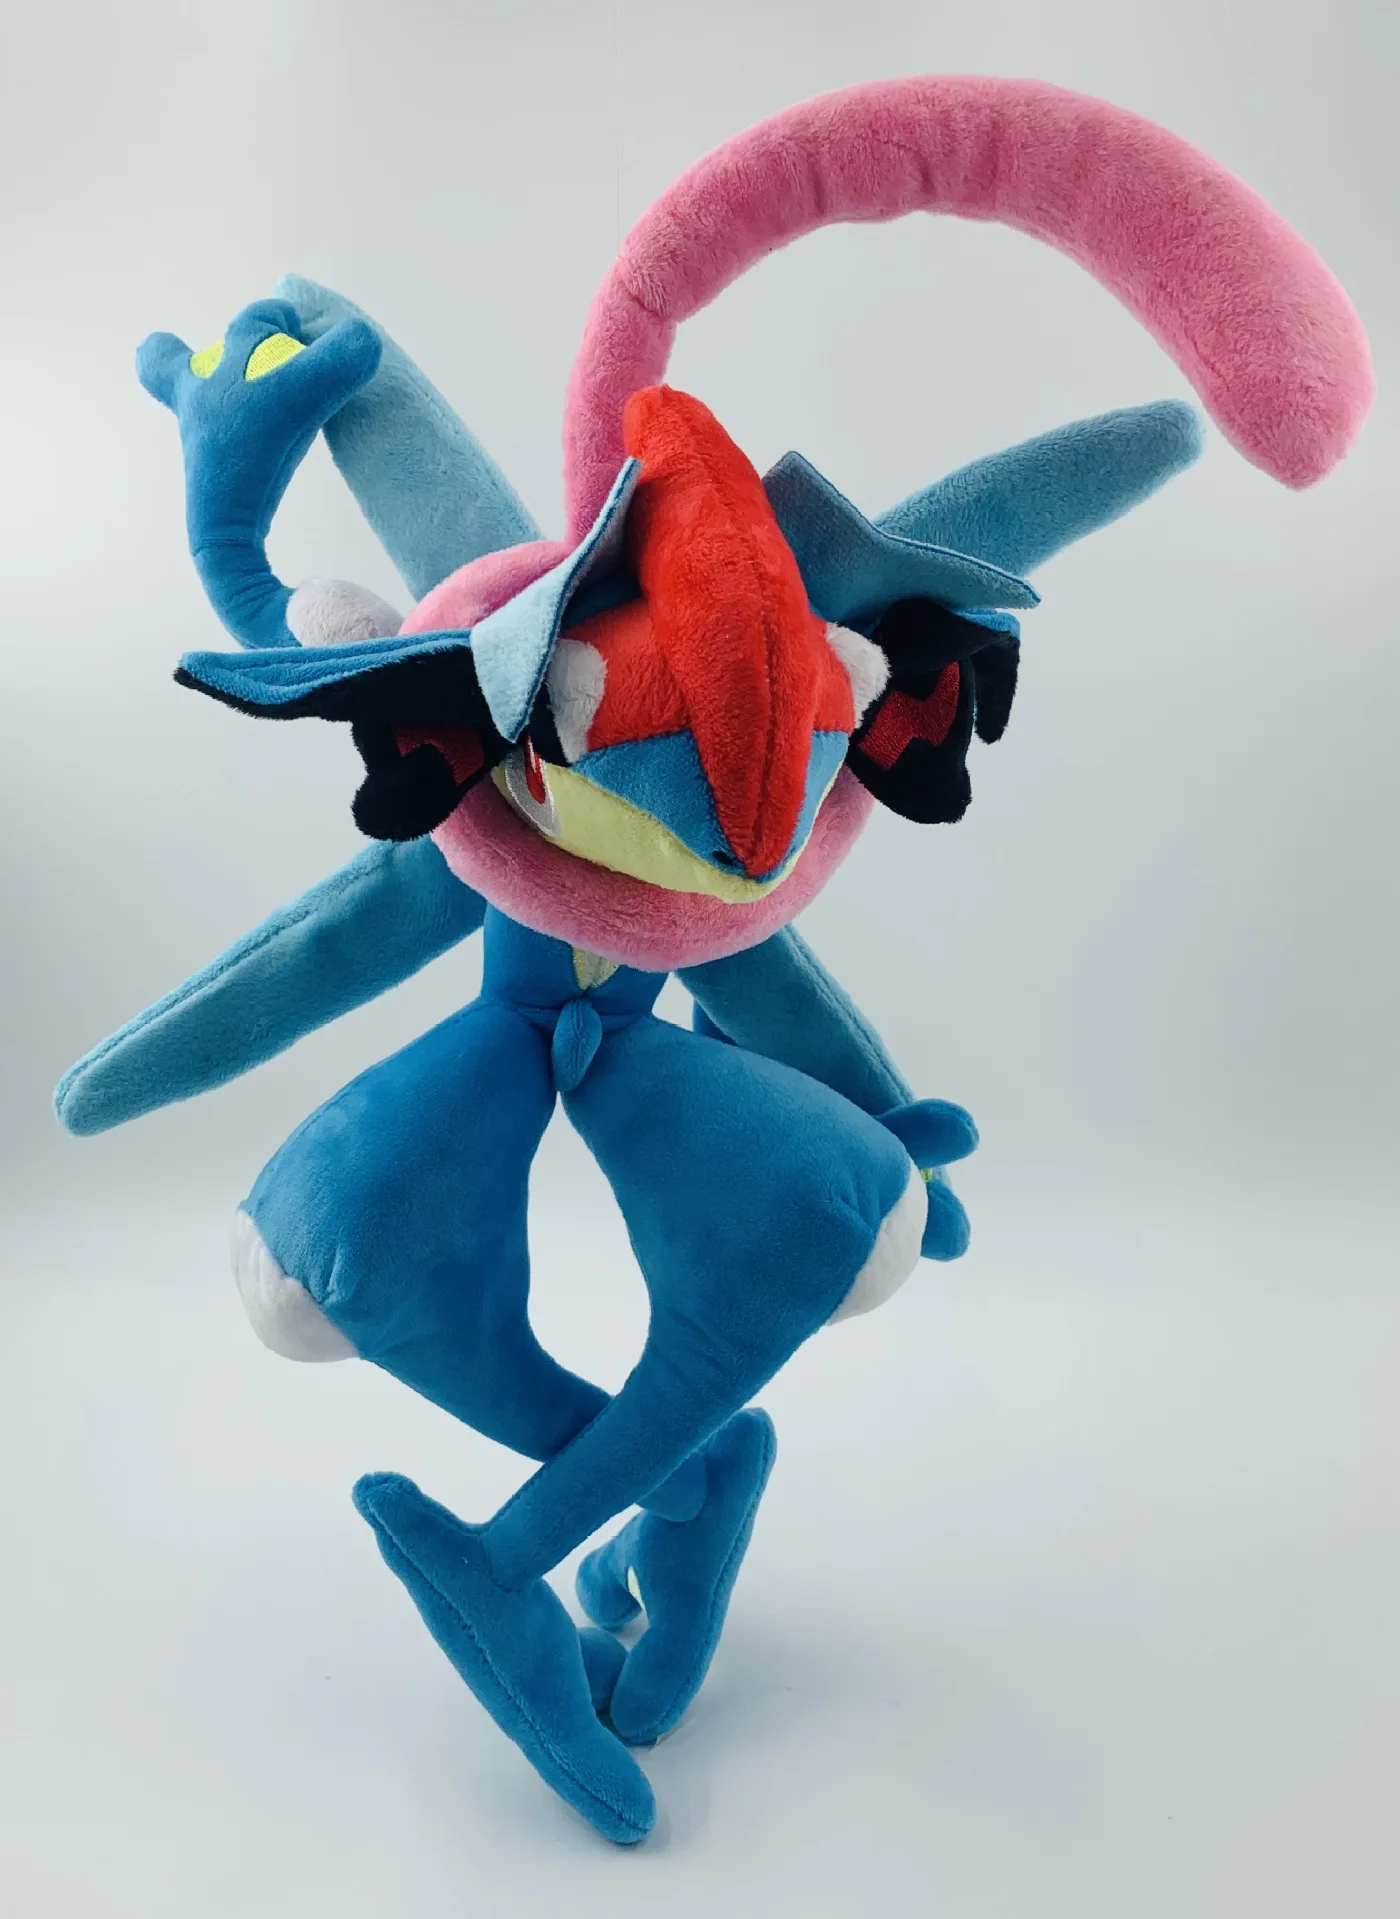 30 см TAKARA TOMY Pokemon Greninja плюшевая игрушка набивная аниме ниндзя лягушка кукла домашний Декор Рождественский подарок для детей